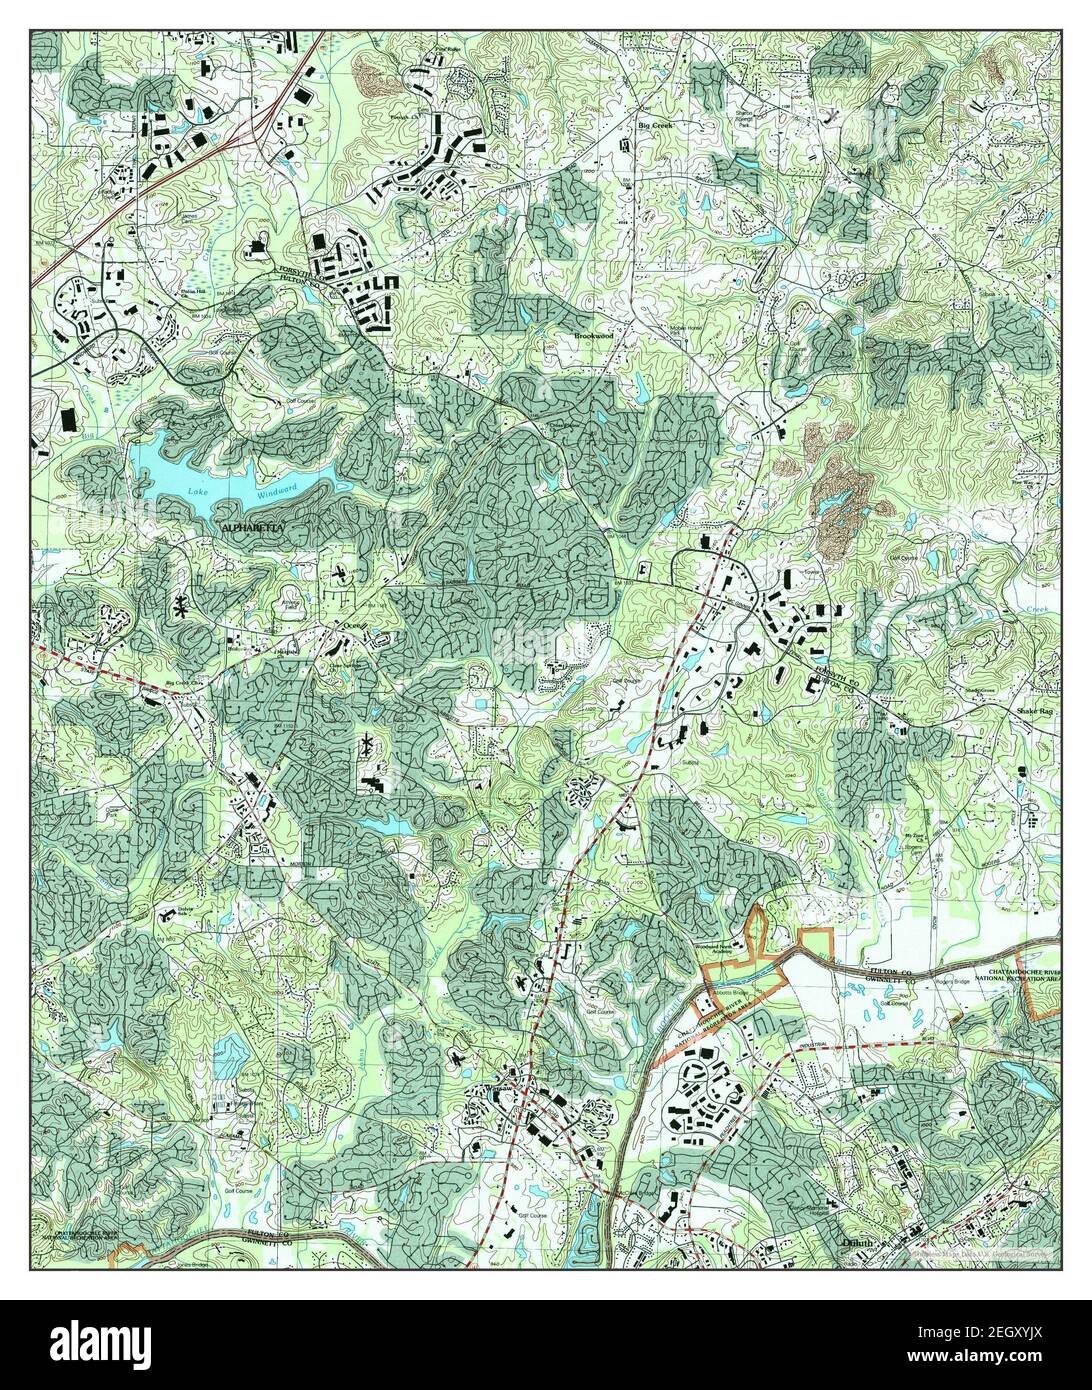 Duluth, Georgia, Karte 1999, 1:24000, Vereinigte Staaten von Amerika von Timeless Maps, Daten U.S. Geological Survey Stockfoto